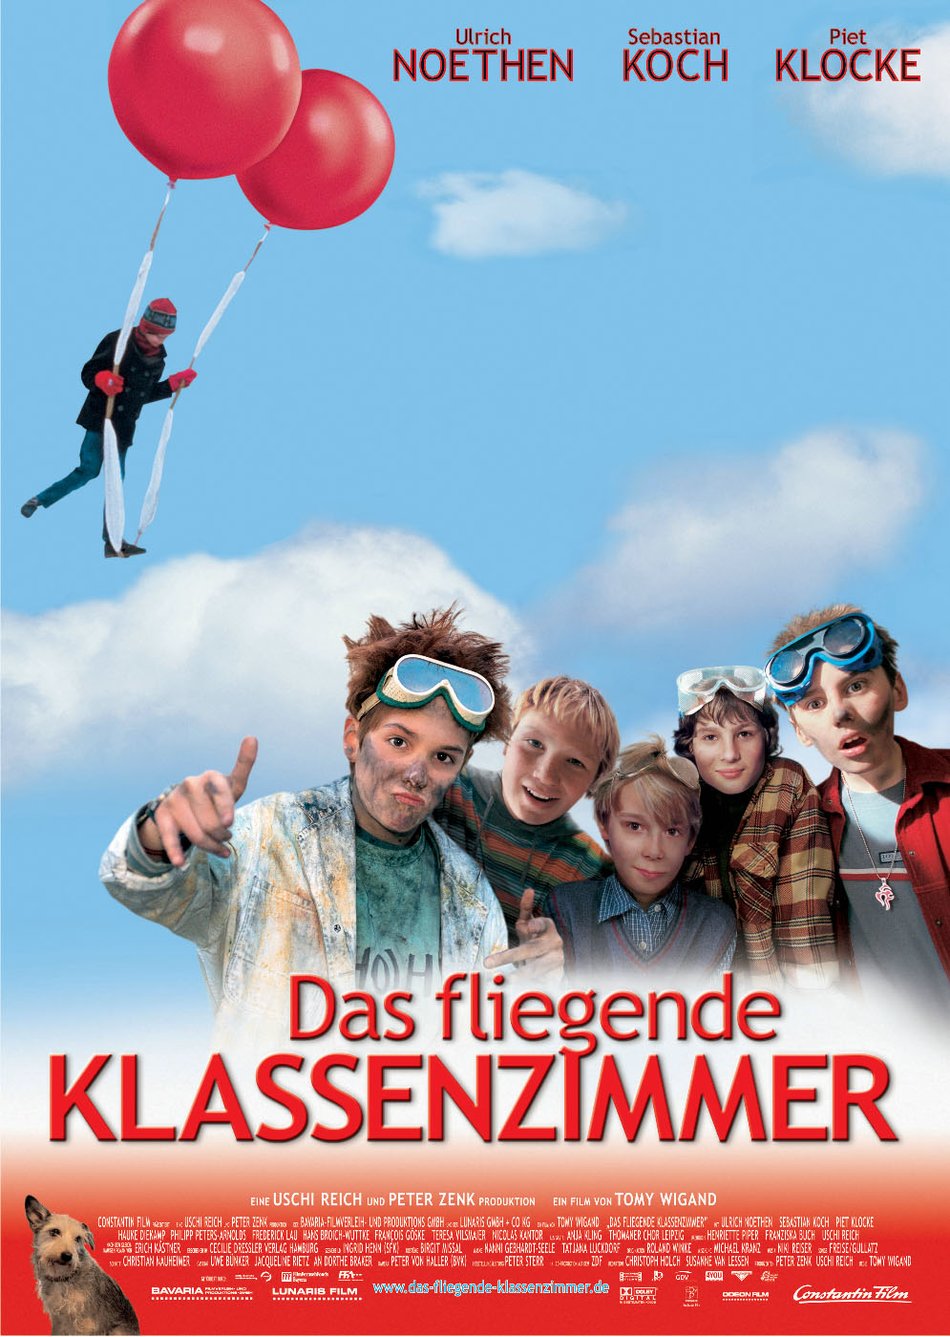 Film » Das fliegende Klassenzimmer | Deutsche Filmbewertung und